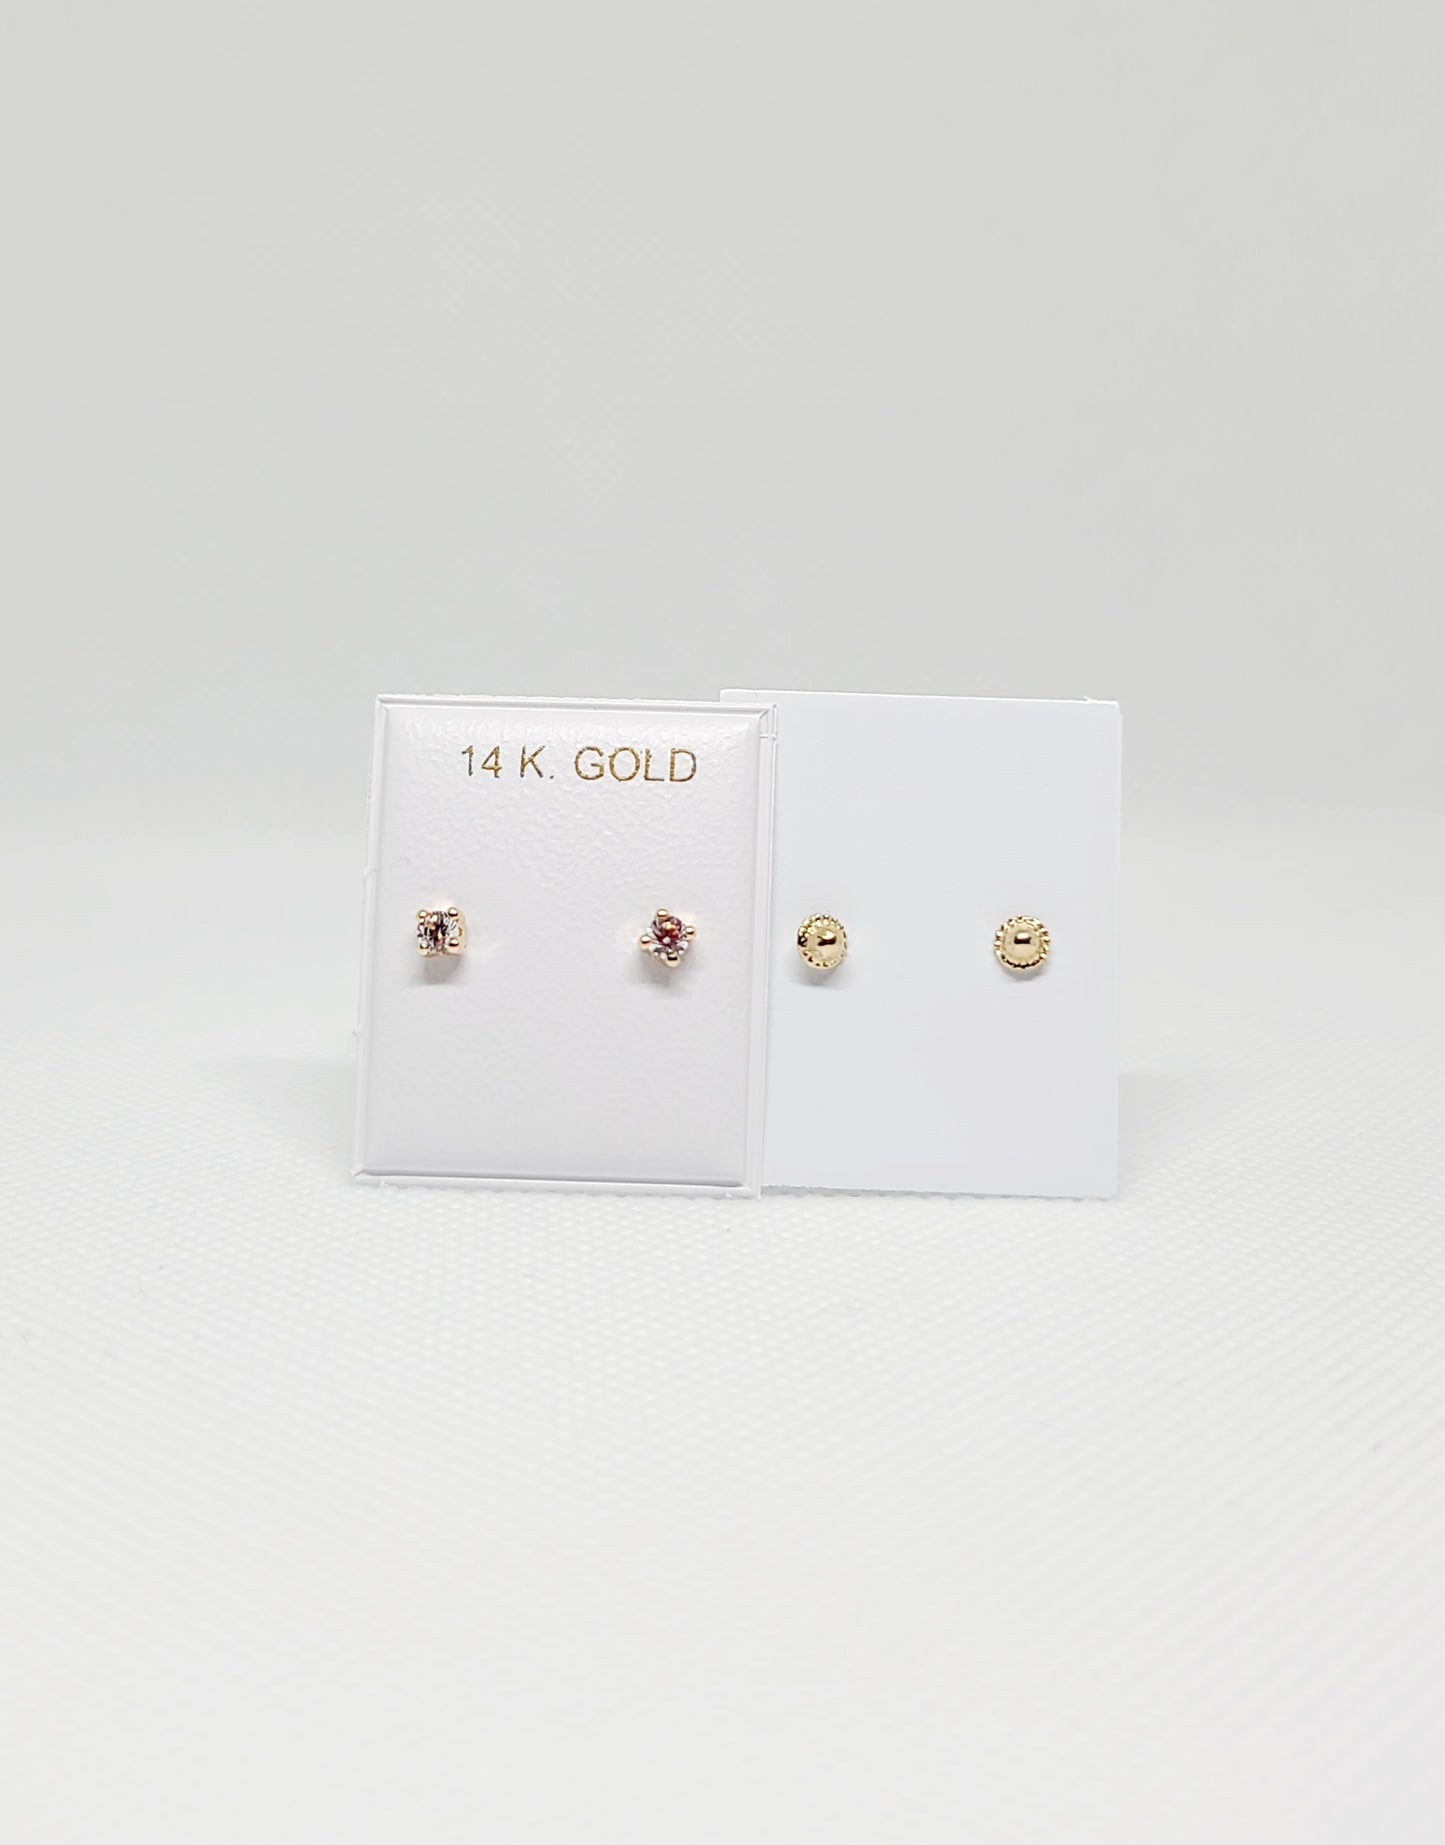 14k Gold Stud Earrings